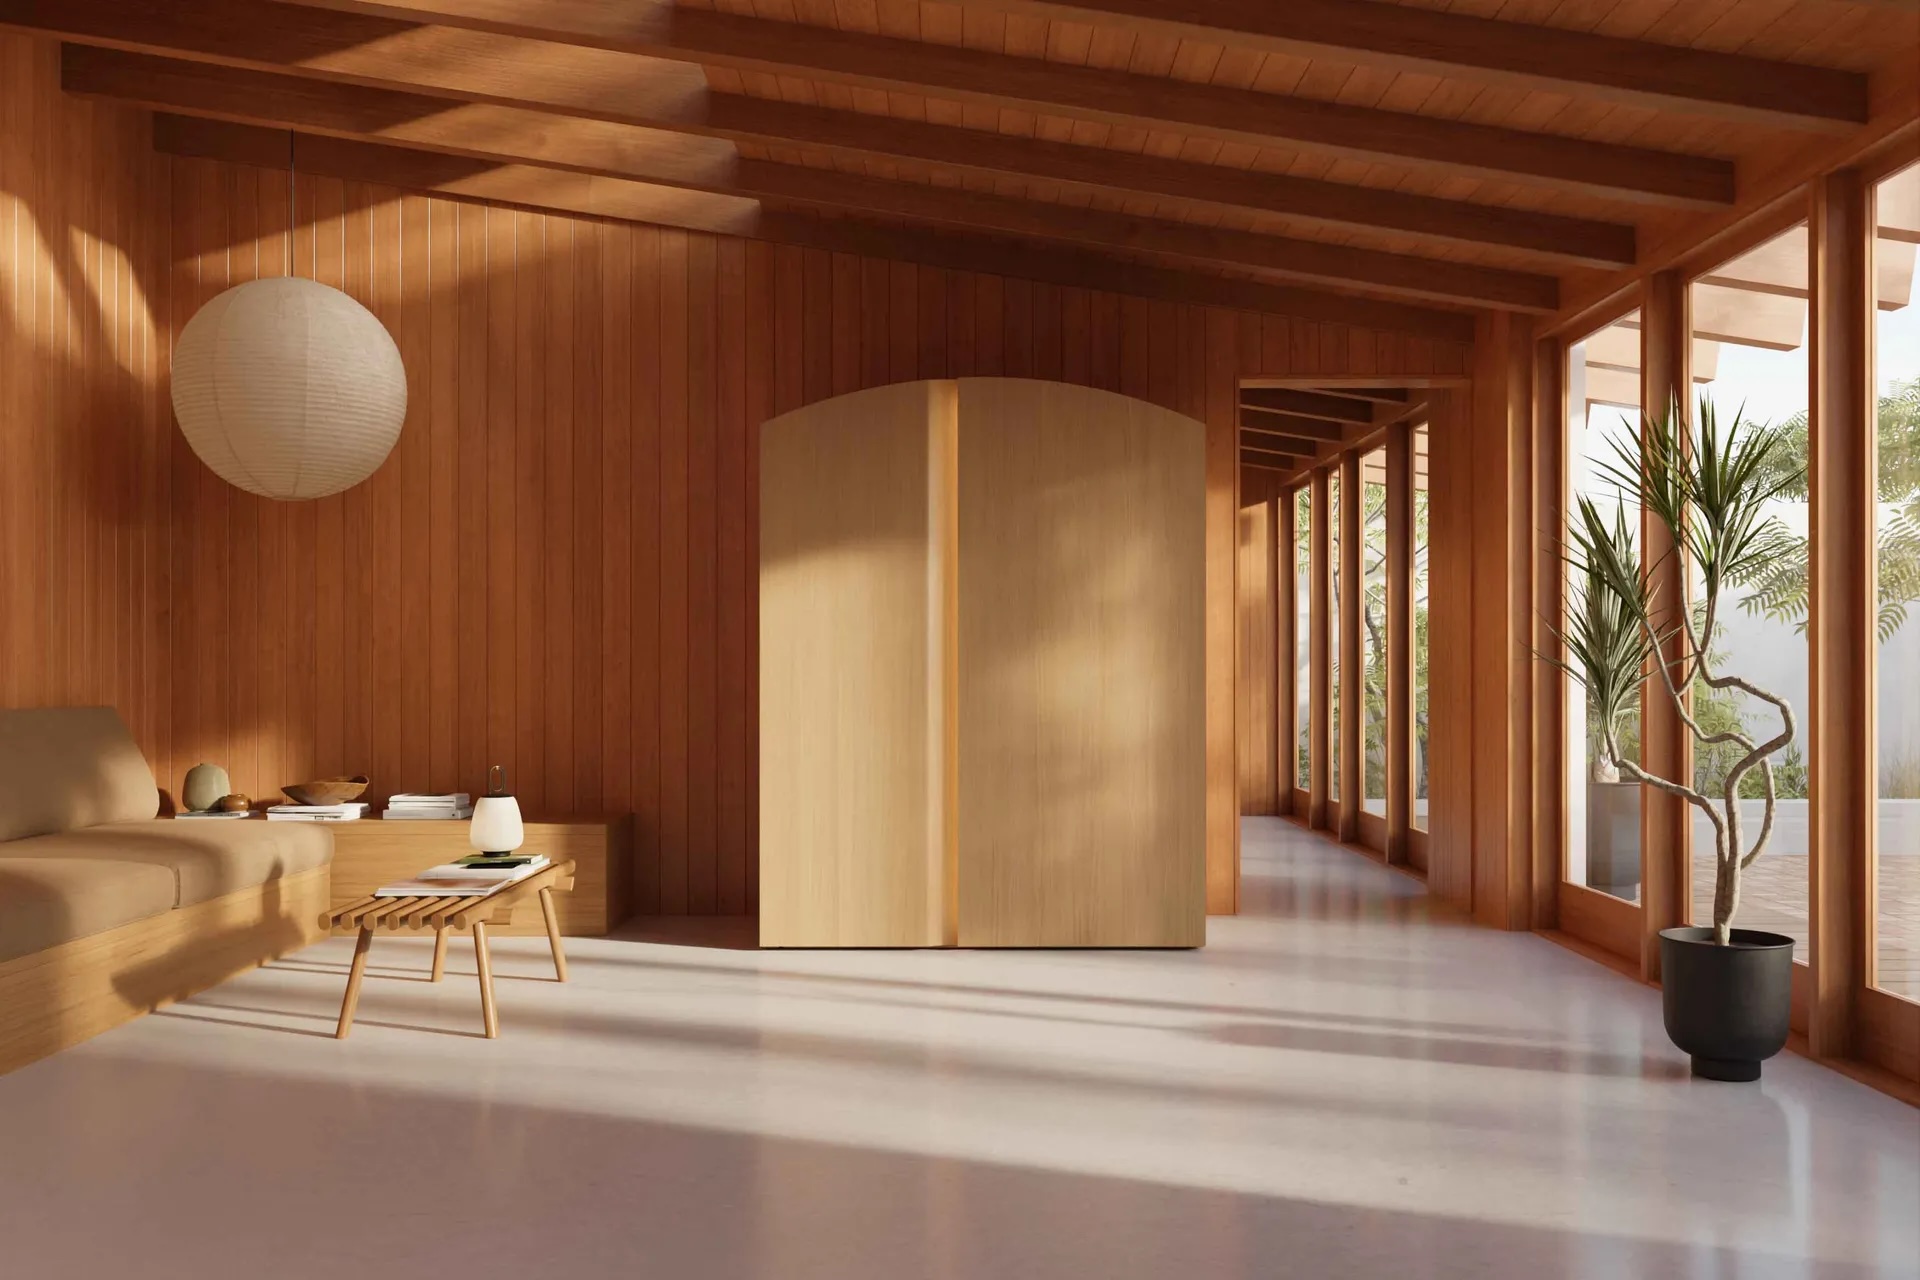 
		Nueva sauna de alta gama para uso doméstico que utiliza la luz y el sonido para llevarle más allá del sudor